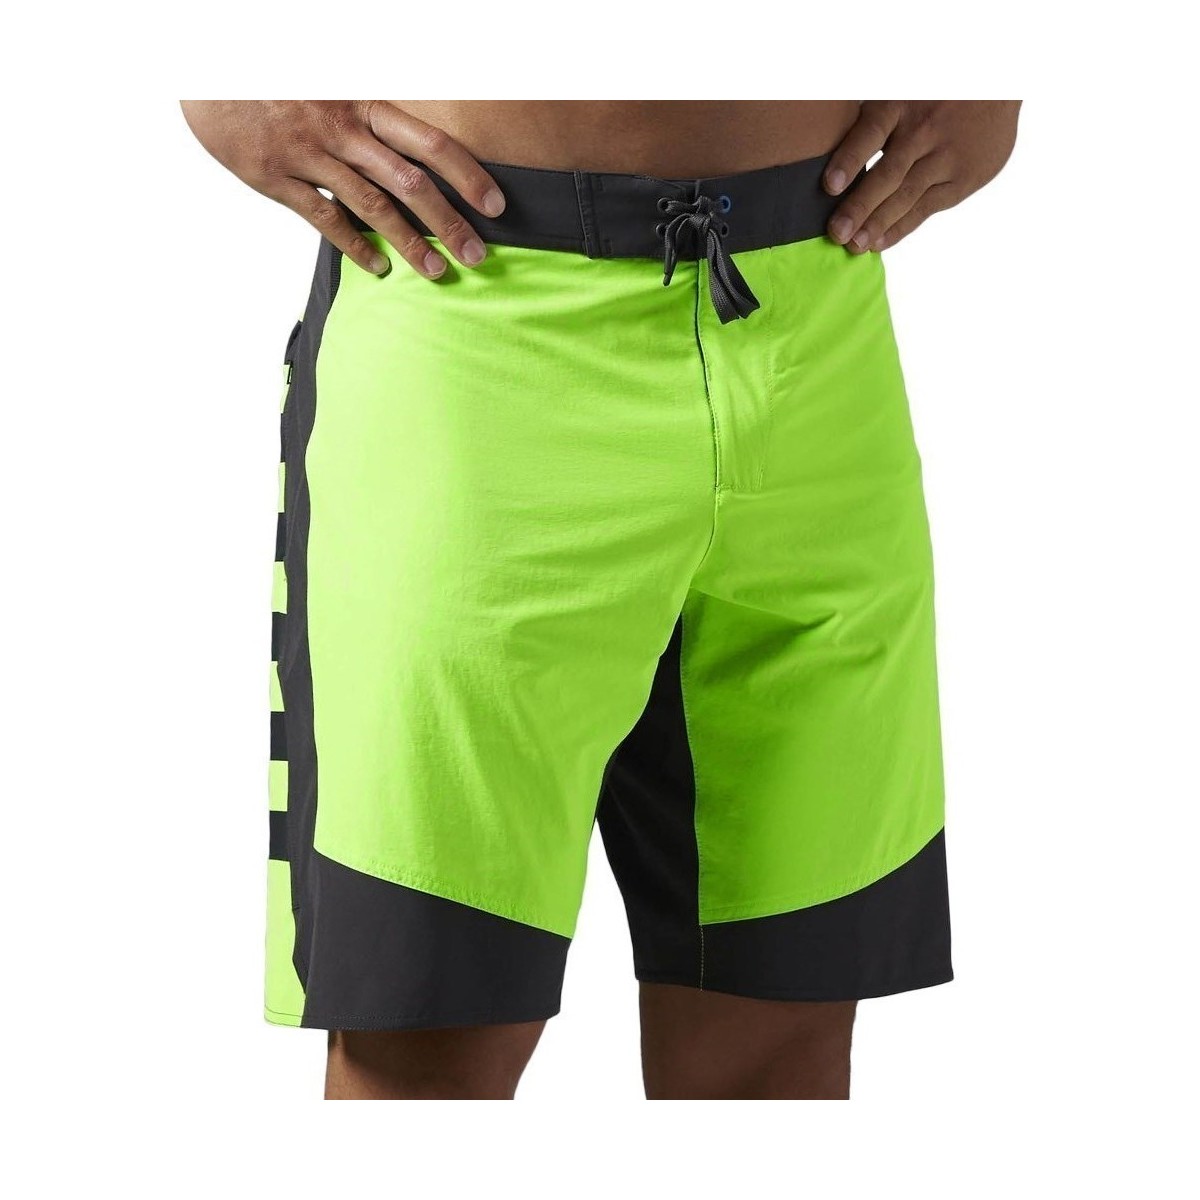 Textil Muži Tříčtvrteční kalhoty Reebok Sport OS Cordura 1SH Černé, Bledě zelené